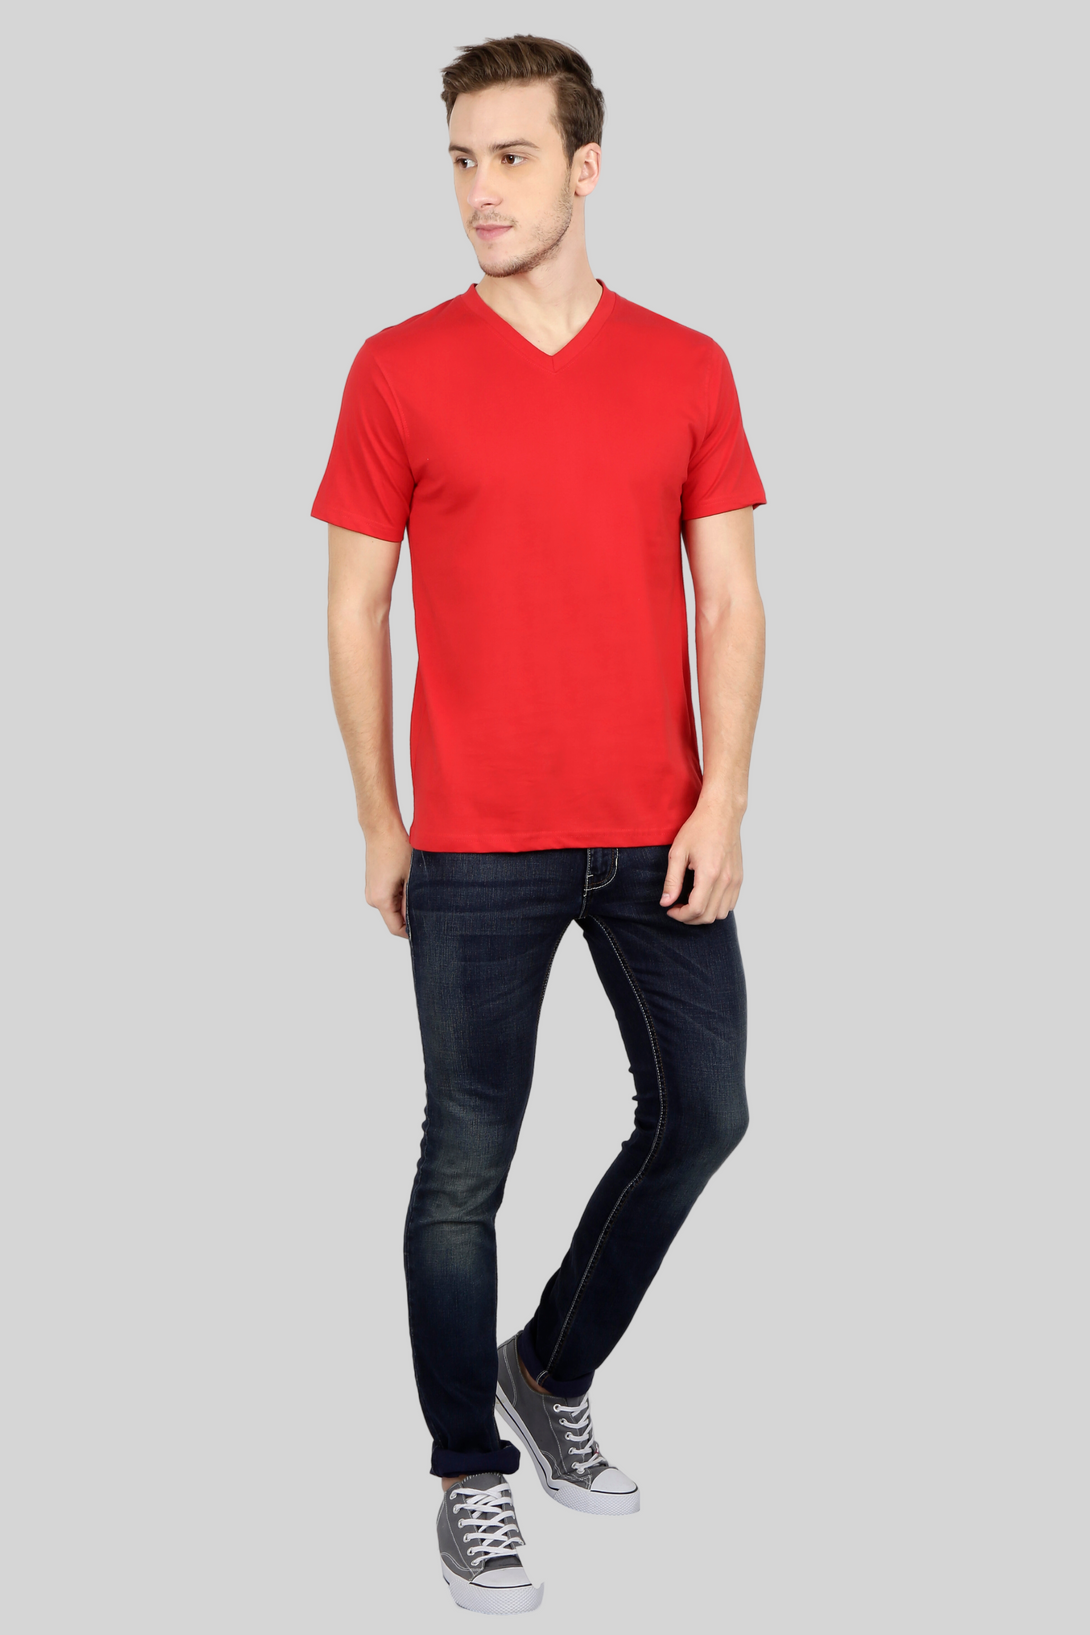 Red V Neck T-Shirt For Men - WowWaves - 2